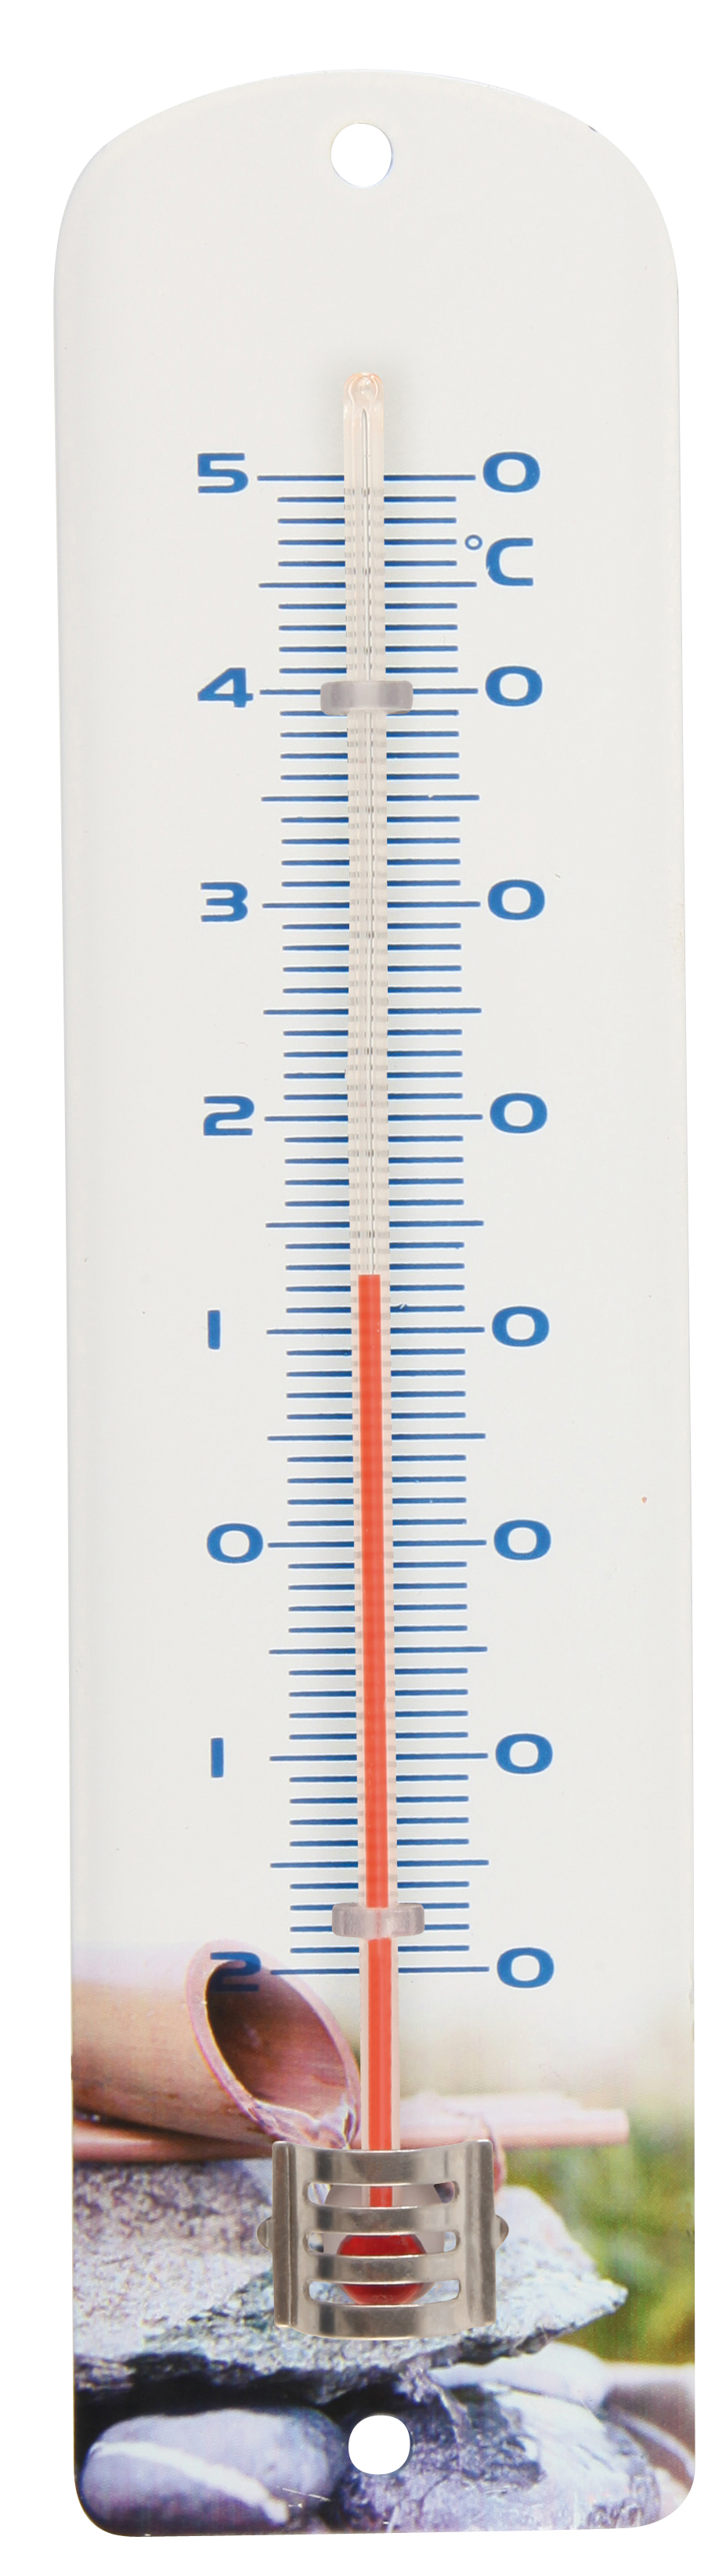 Bilame, thermomètre mini-maxi, int/ext - L.7,7 x l.3 x H.16 cm - Jardiland